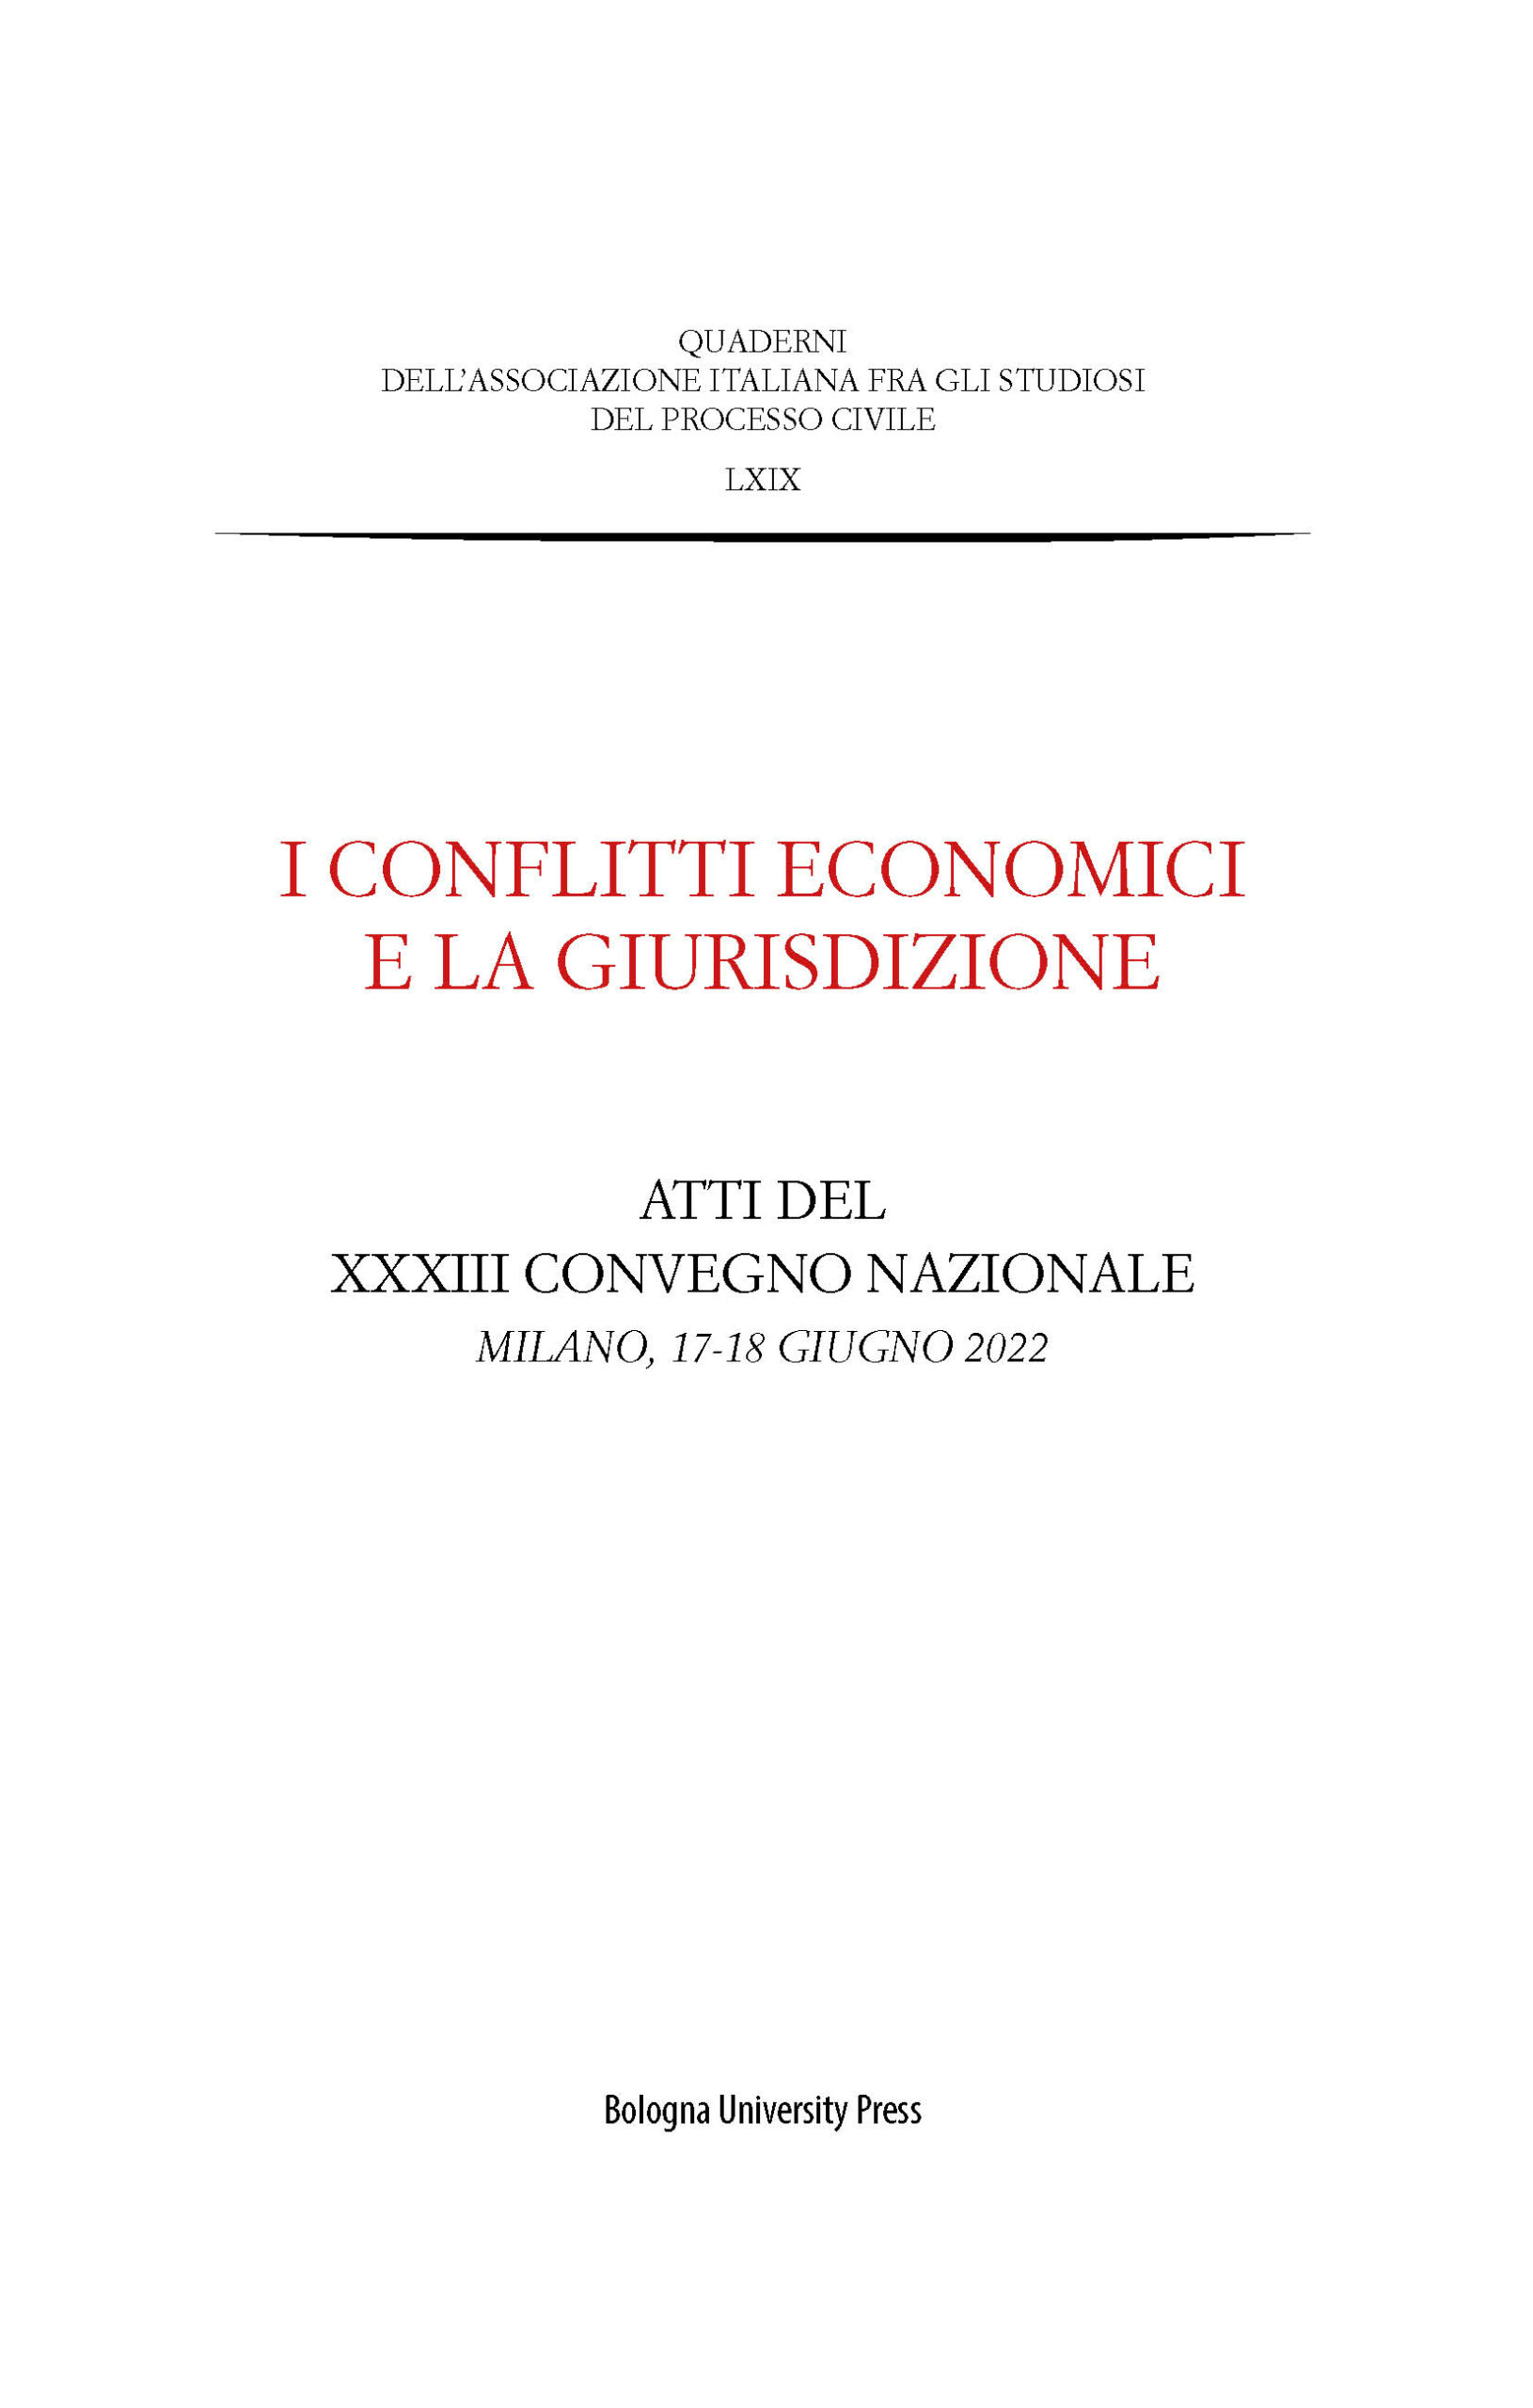 I conflitti economici e la giurisdizione - Bologna University Press